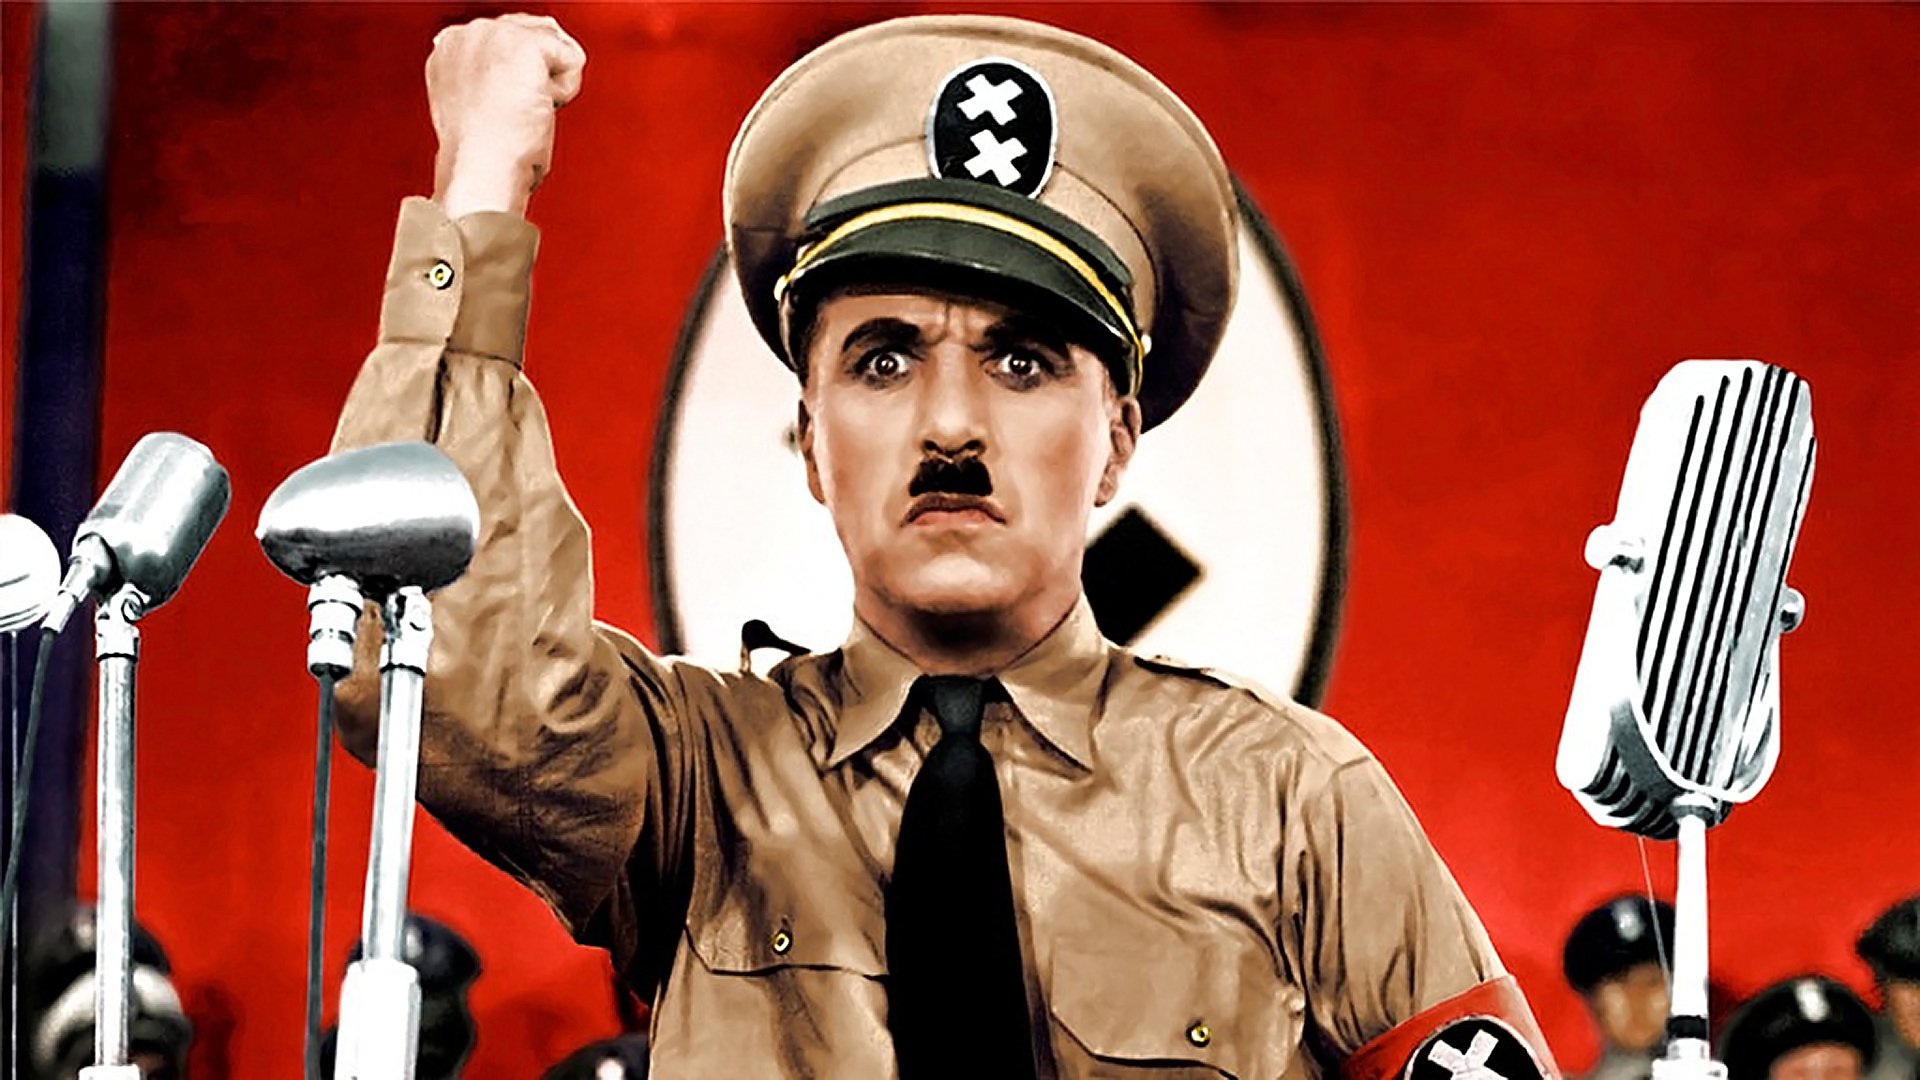 Комик Чарли Чаплин в роли Гитлера. Цитата из фильма «Великий диктатор». Режиссер Ч. Чаплин. 1940